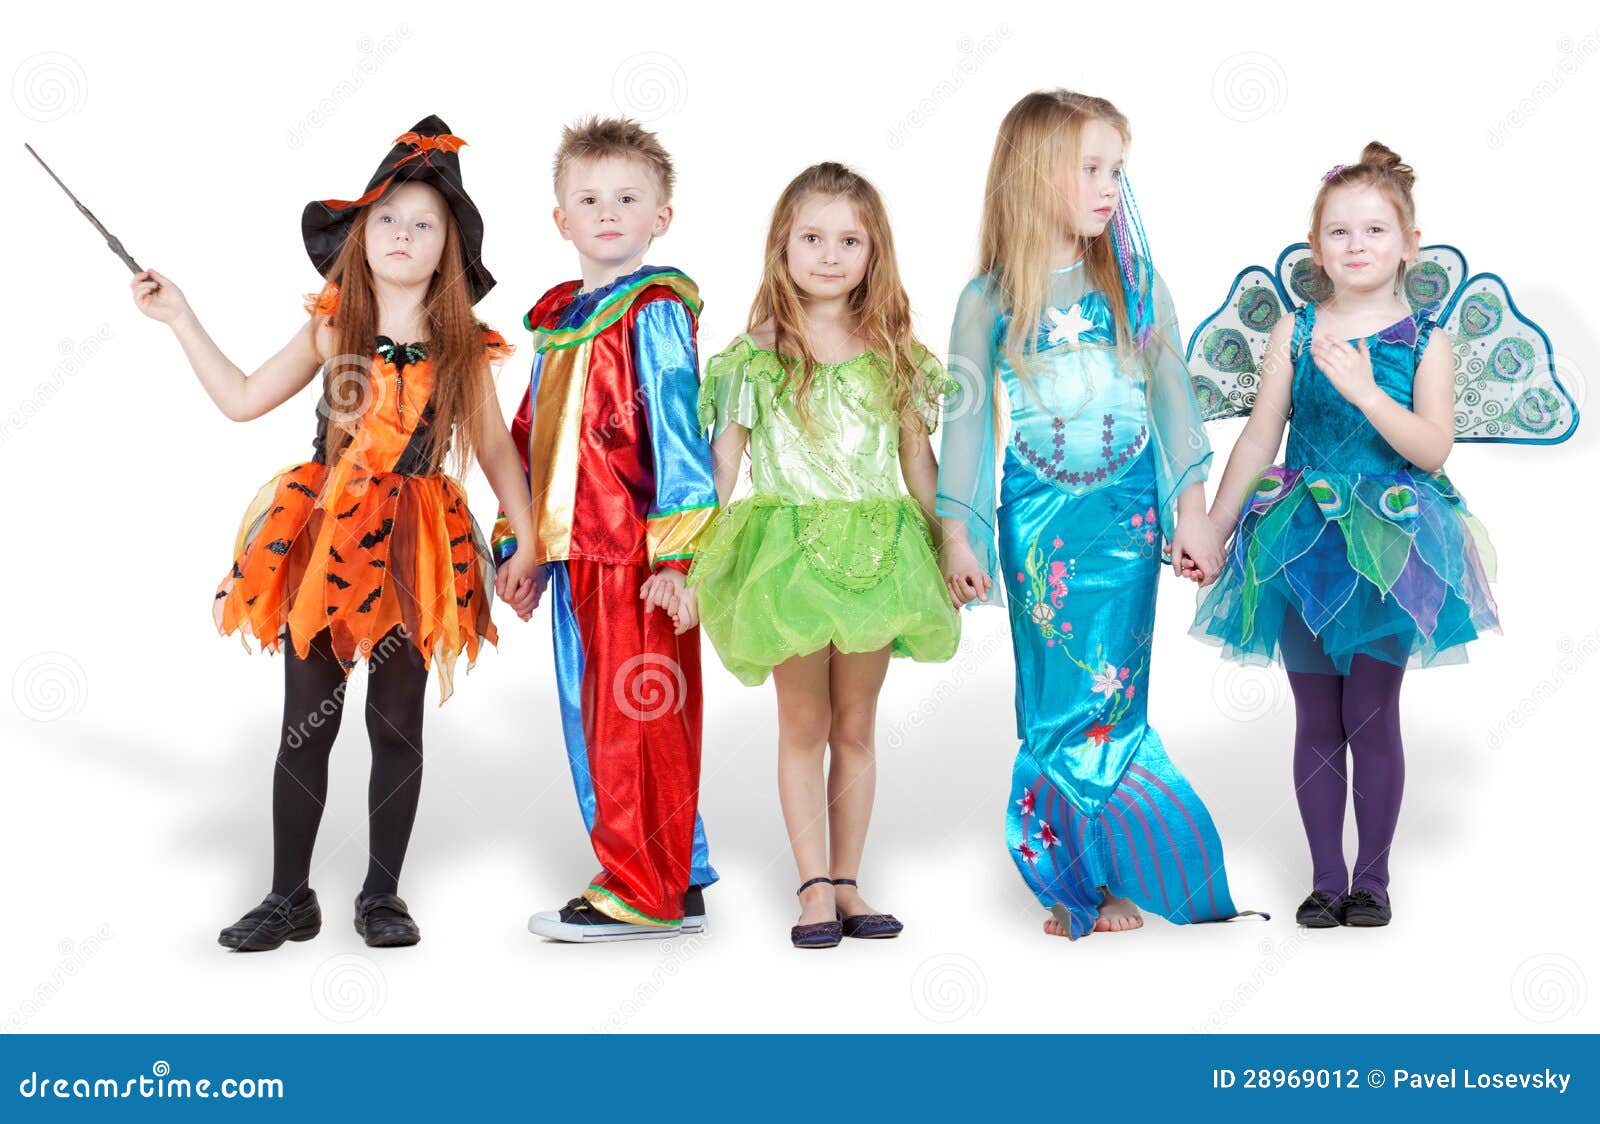 Costumi di Carnevale per bambini dalla A alla Z 